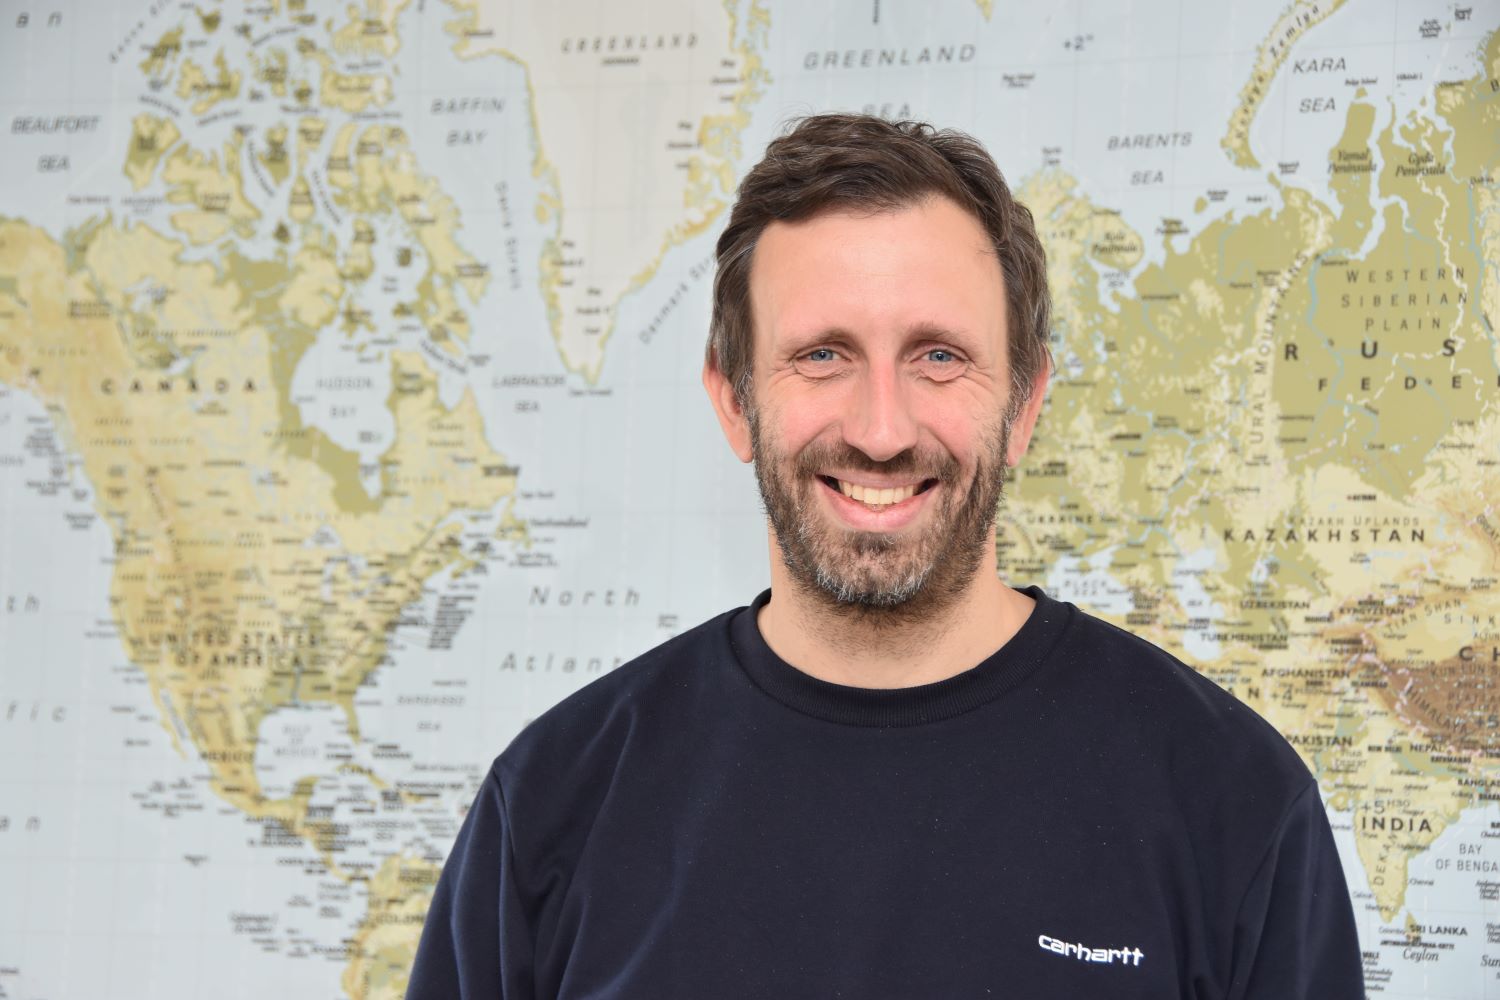 Nachhaltigkeitsexperte und Reisebüro-Inhaber Ralf Hieke